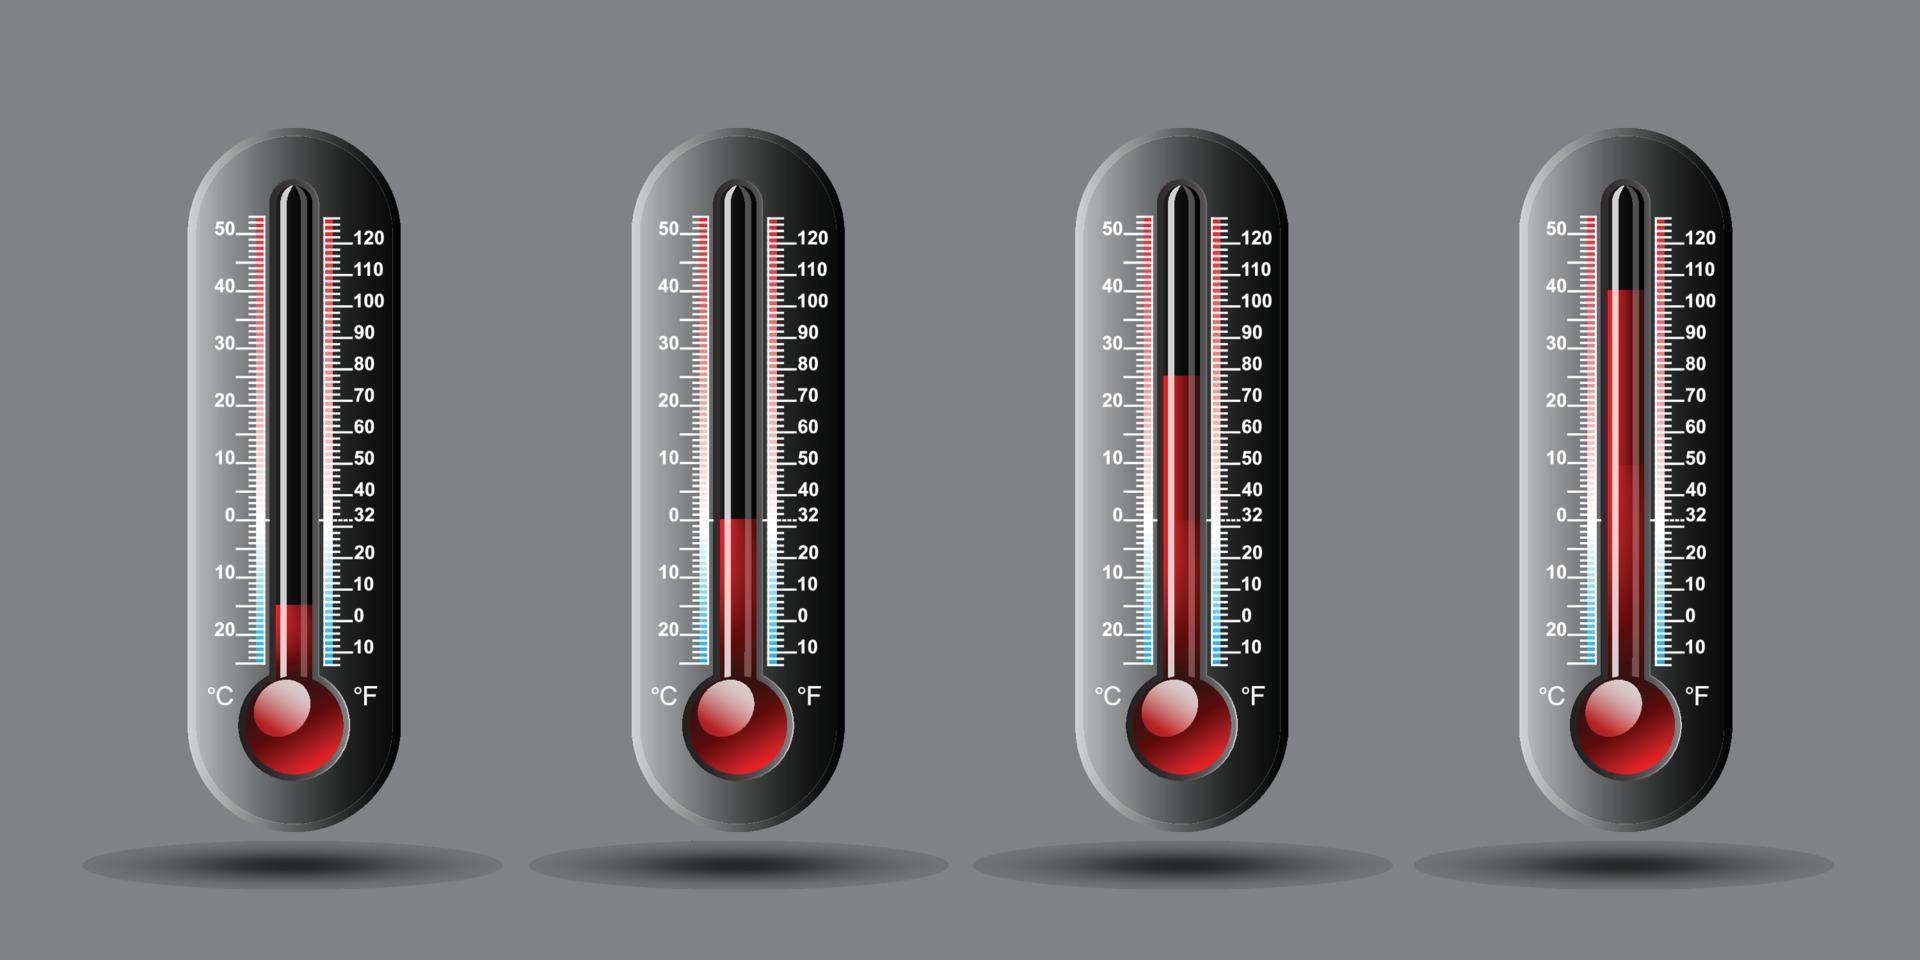 termômetro de temperatura definido com escala celsius e fahrenheit. ilustração vetorial vetor